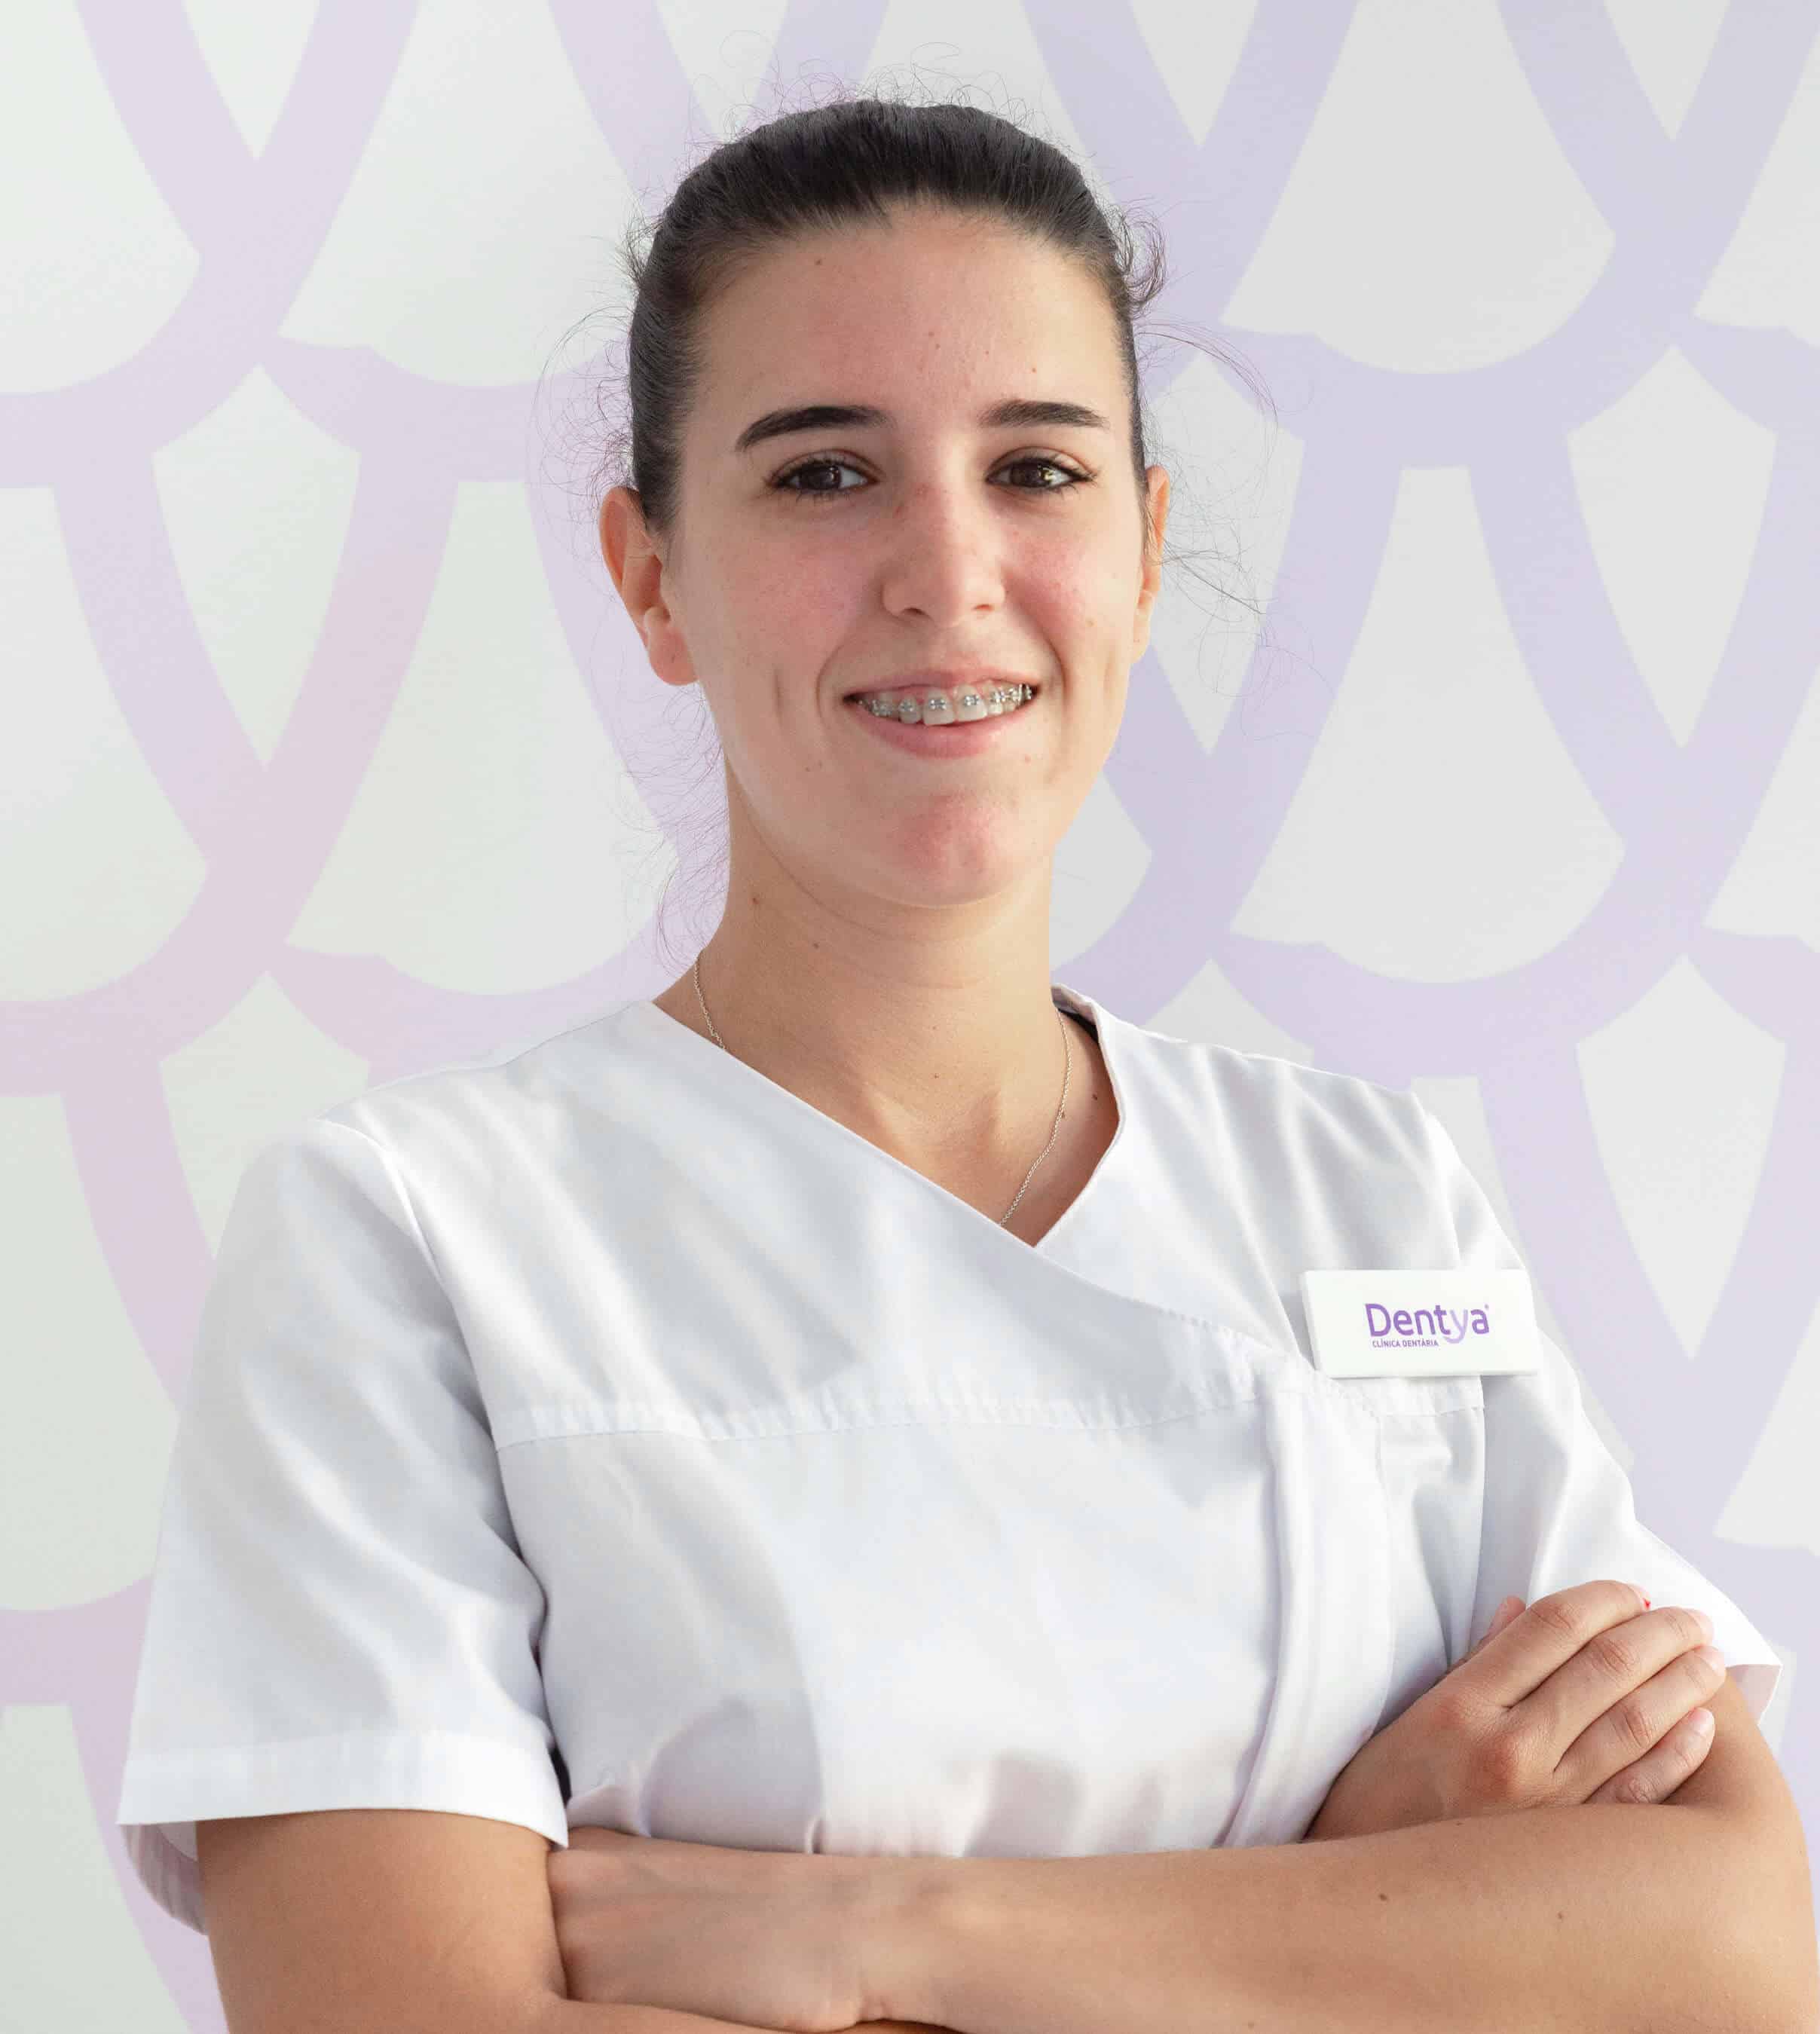 Doutora Filipa Marques, dentista na clínica dentária Dentya